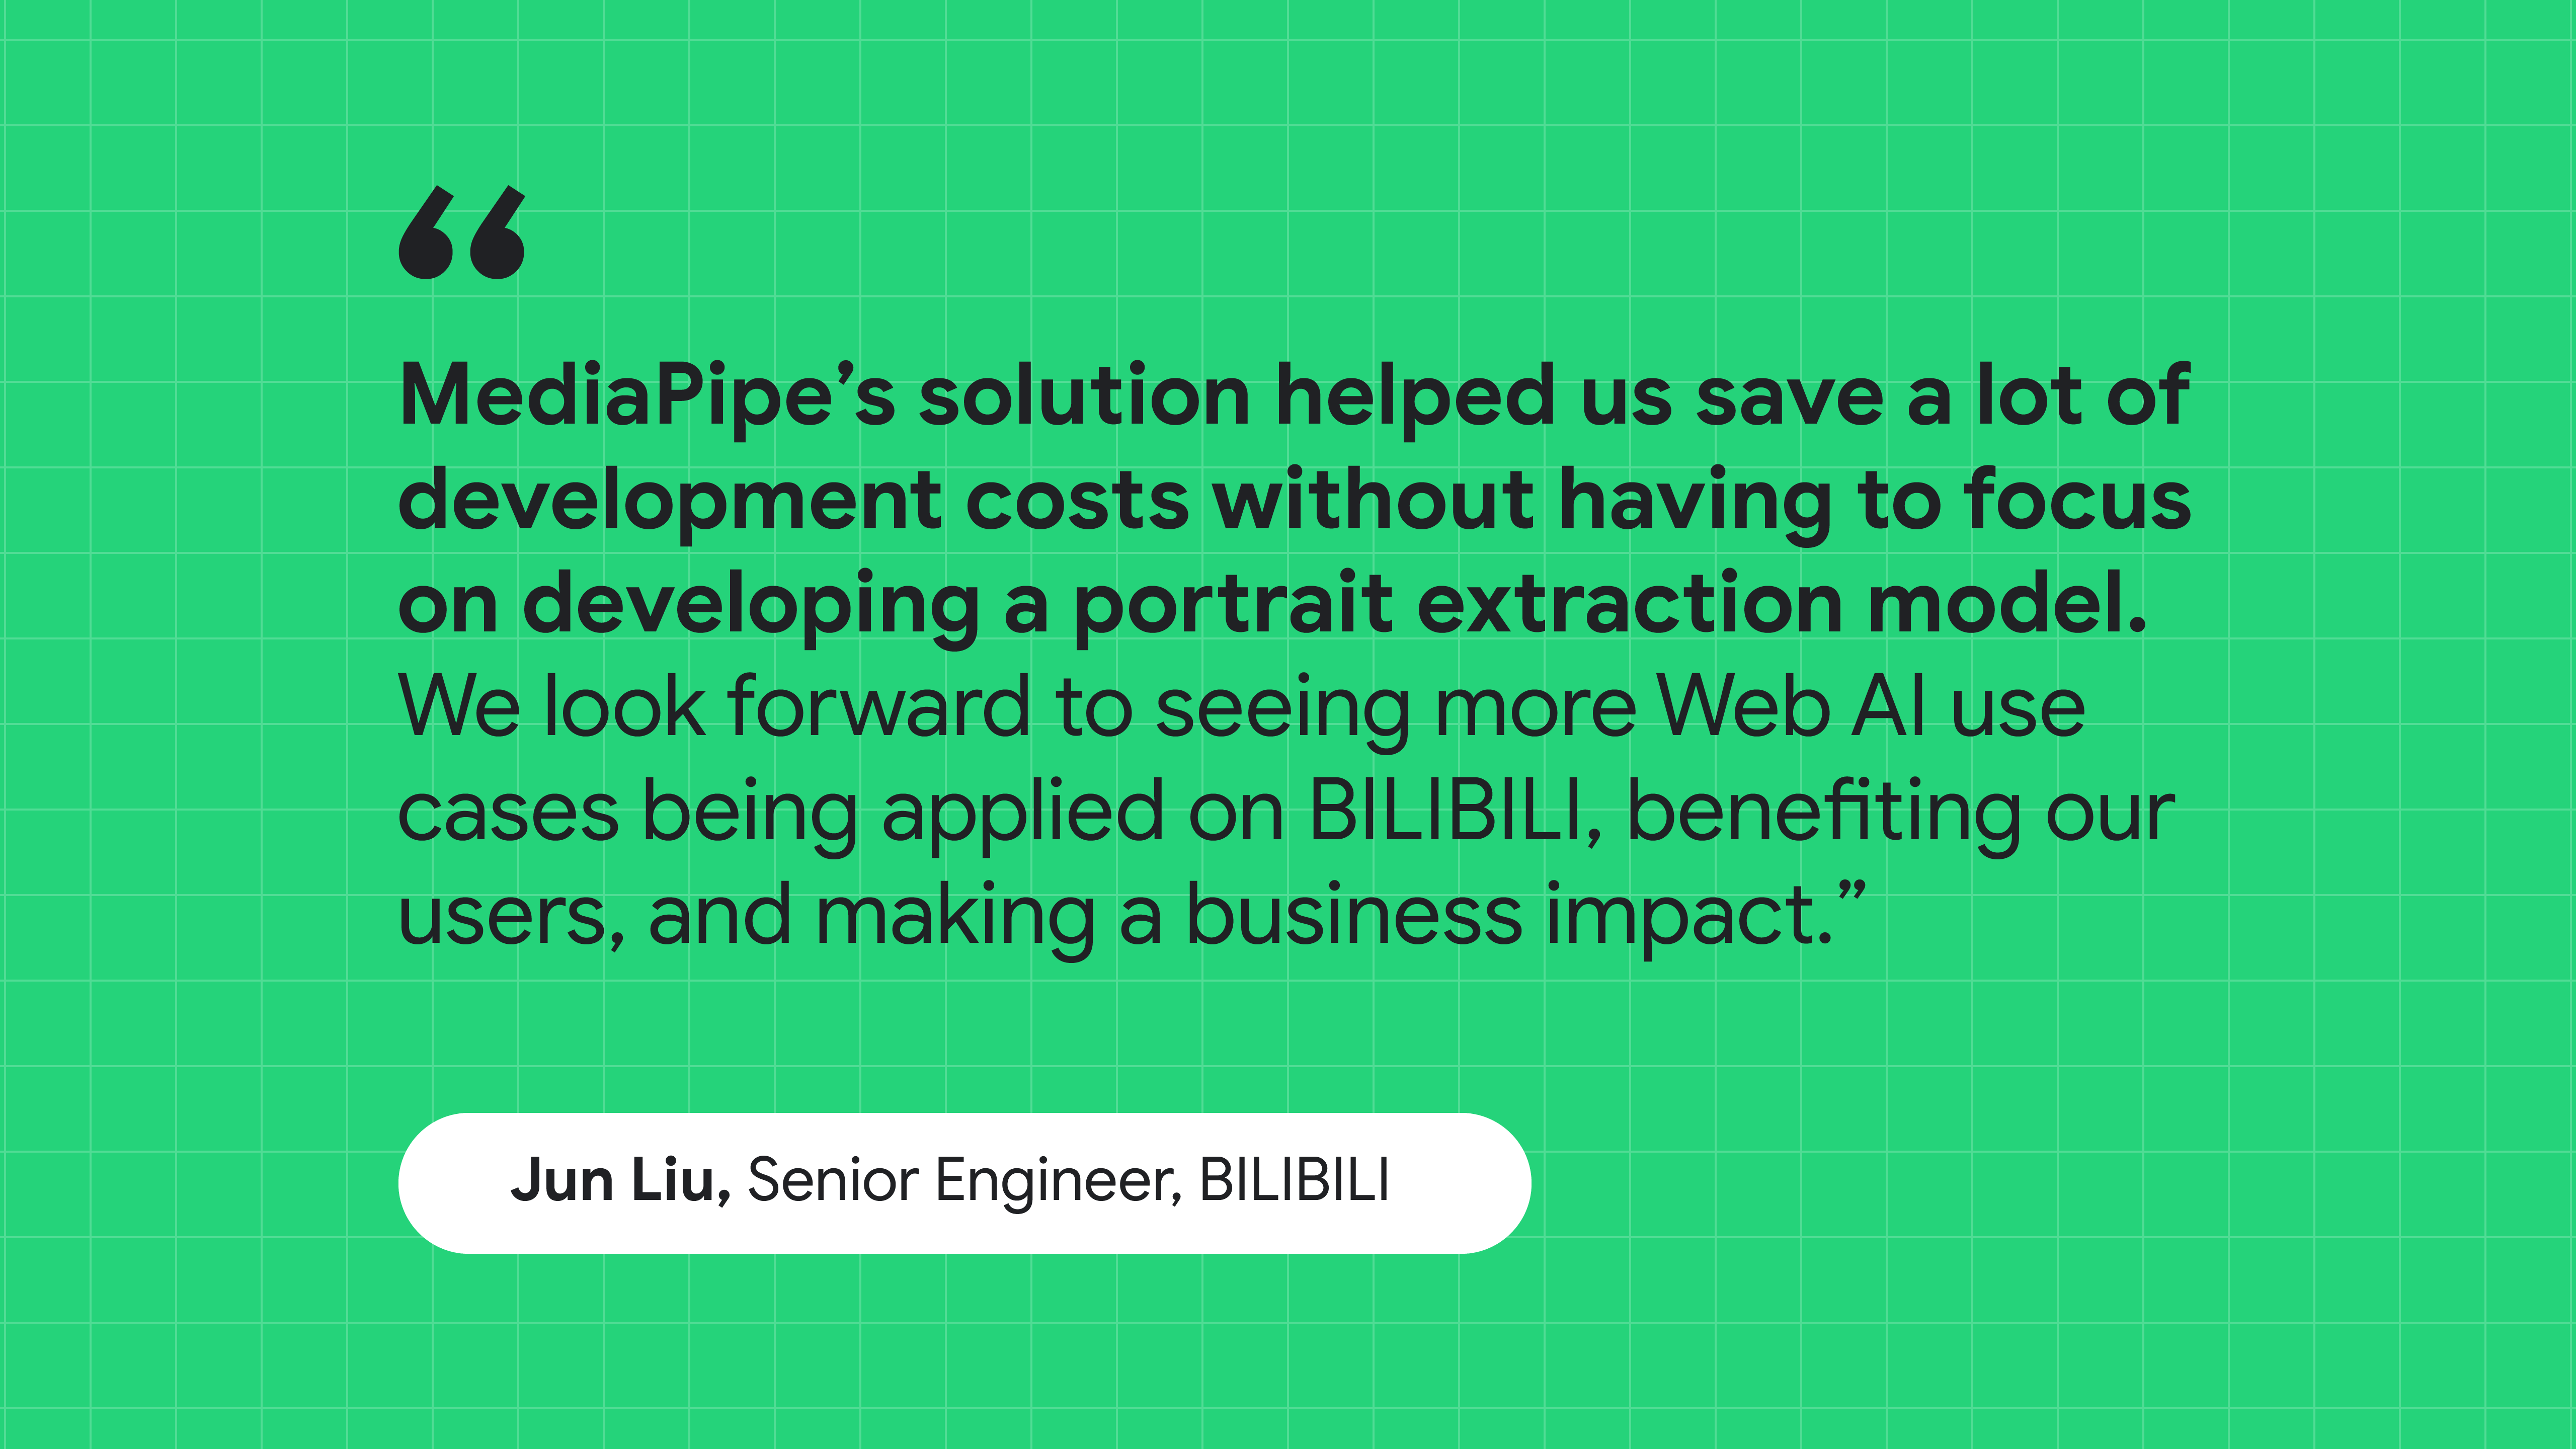 引自 BILIBILI 高级工程师 Jun Liu 的名言：MediaPipe 的解决方案帮助我们节省了开发成本，而无需专注于创建人像提取模型。